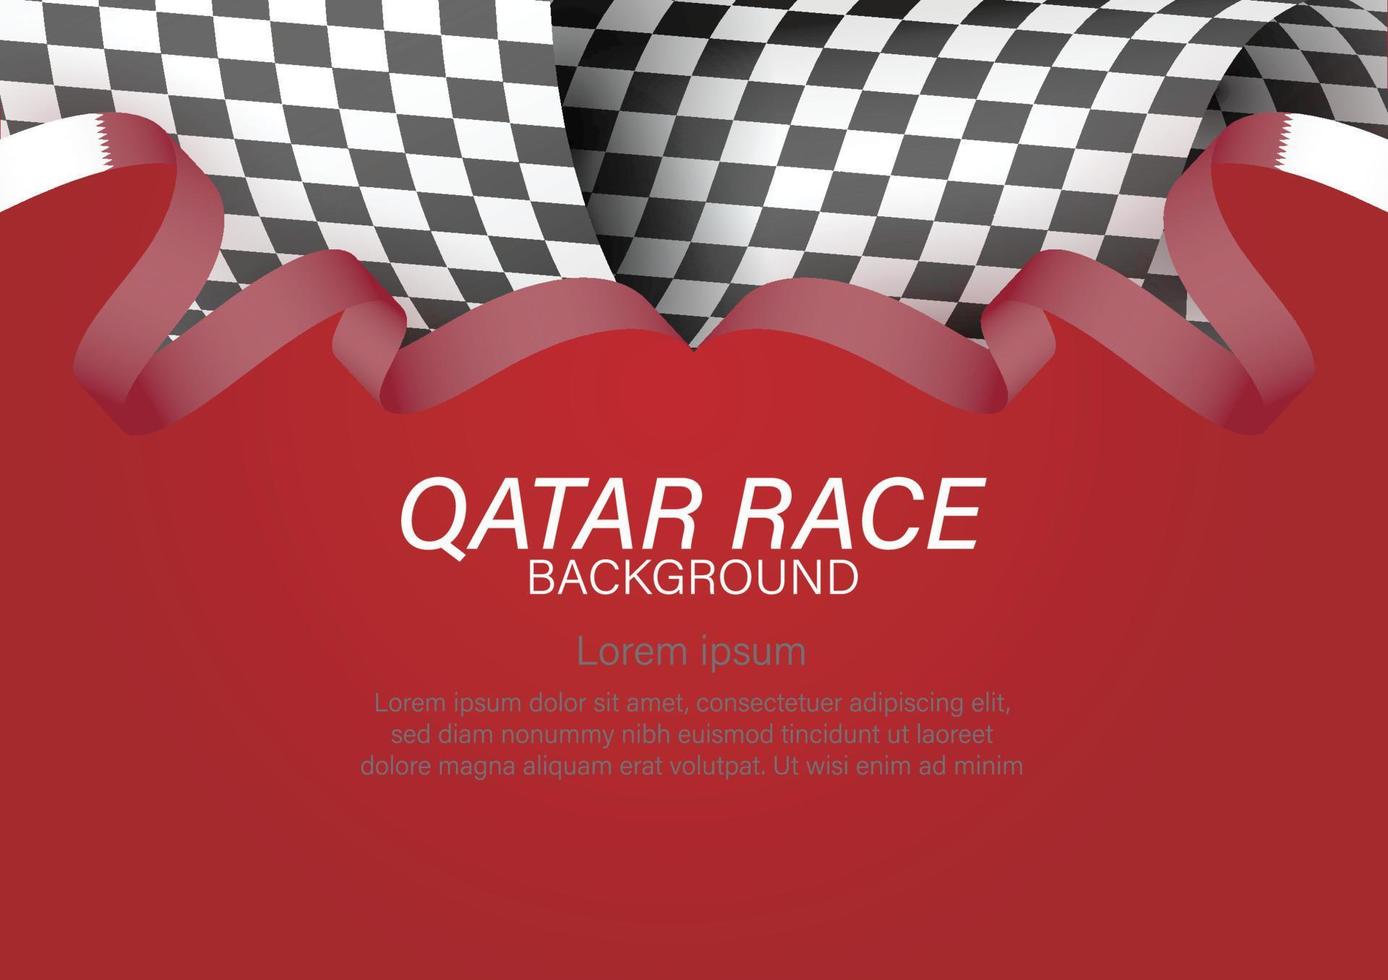 bandiera da corsa con nastro colorato bandiera qatar, illustrazione vettoriale